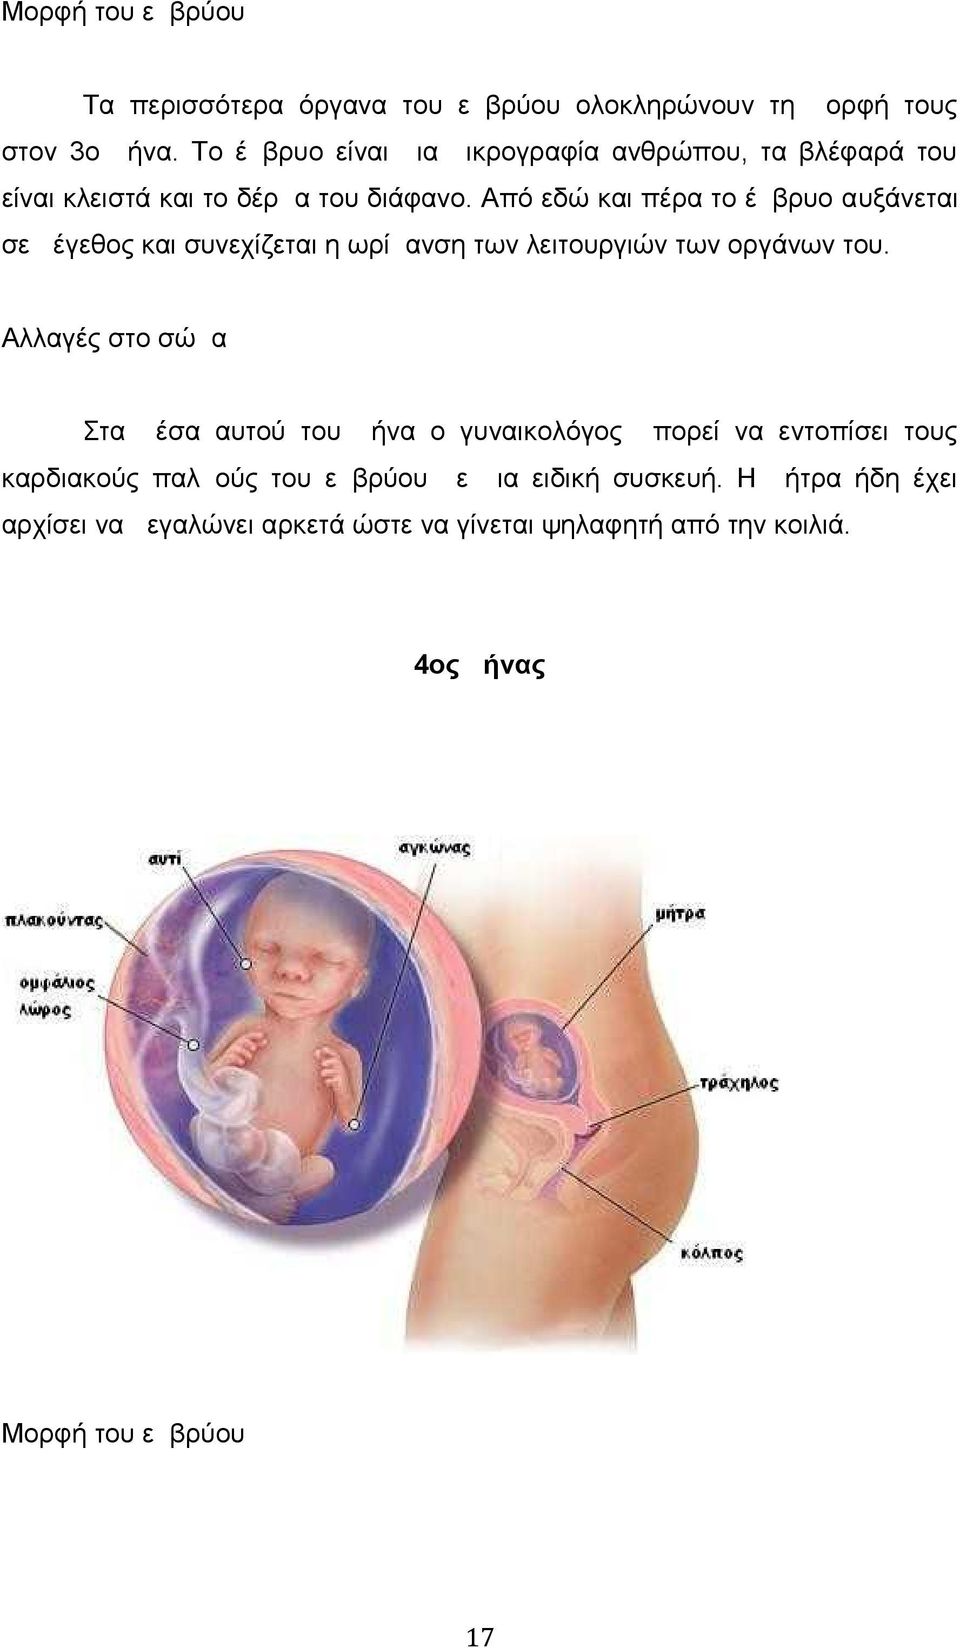 Από εδώ και πέρα το έμβρυο αυξάνεται σε μέγεθος και συνεχίζεται η ωρίμανση των λειτουργιών των οργάνων του.